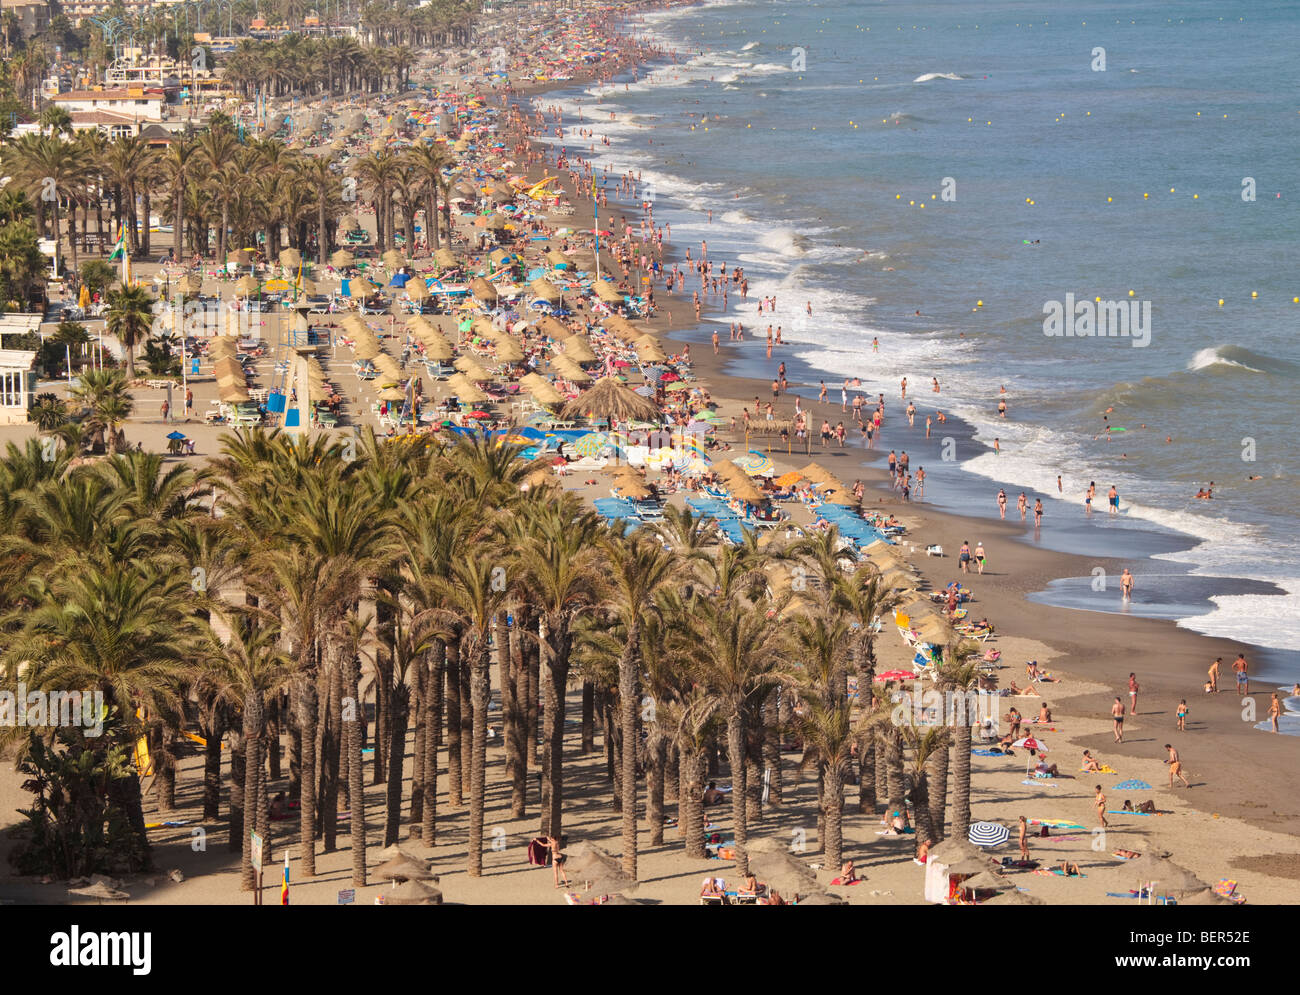 Bajondillo-Playamar beach, Torremolinos, Costa del Sol, la province de Malaga, Espagne Banque D'Images